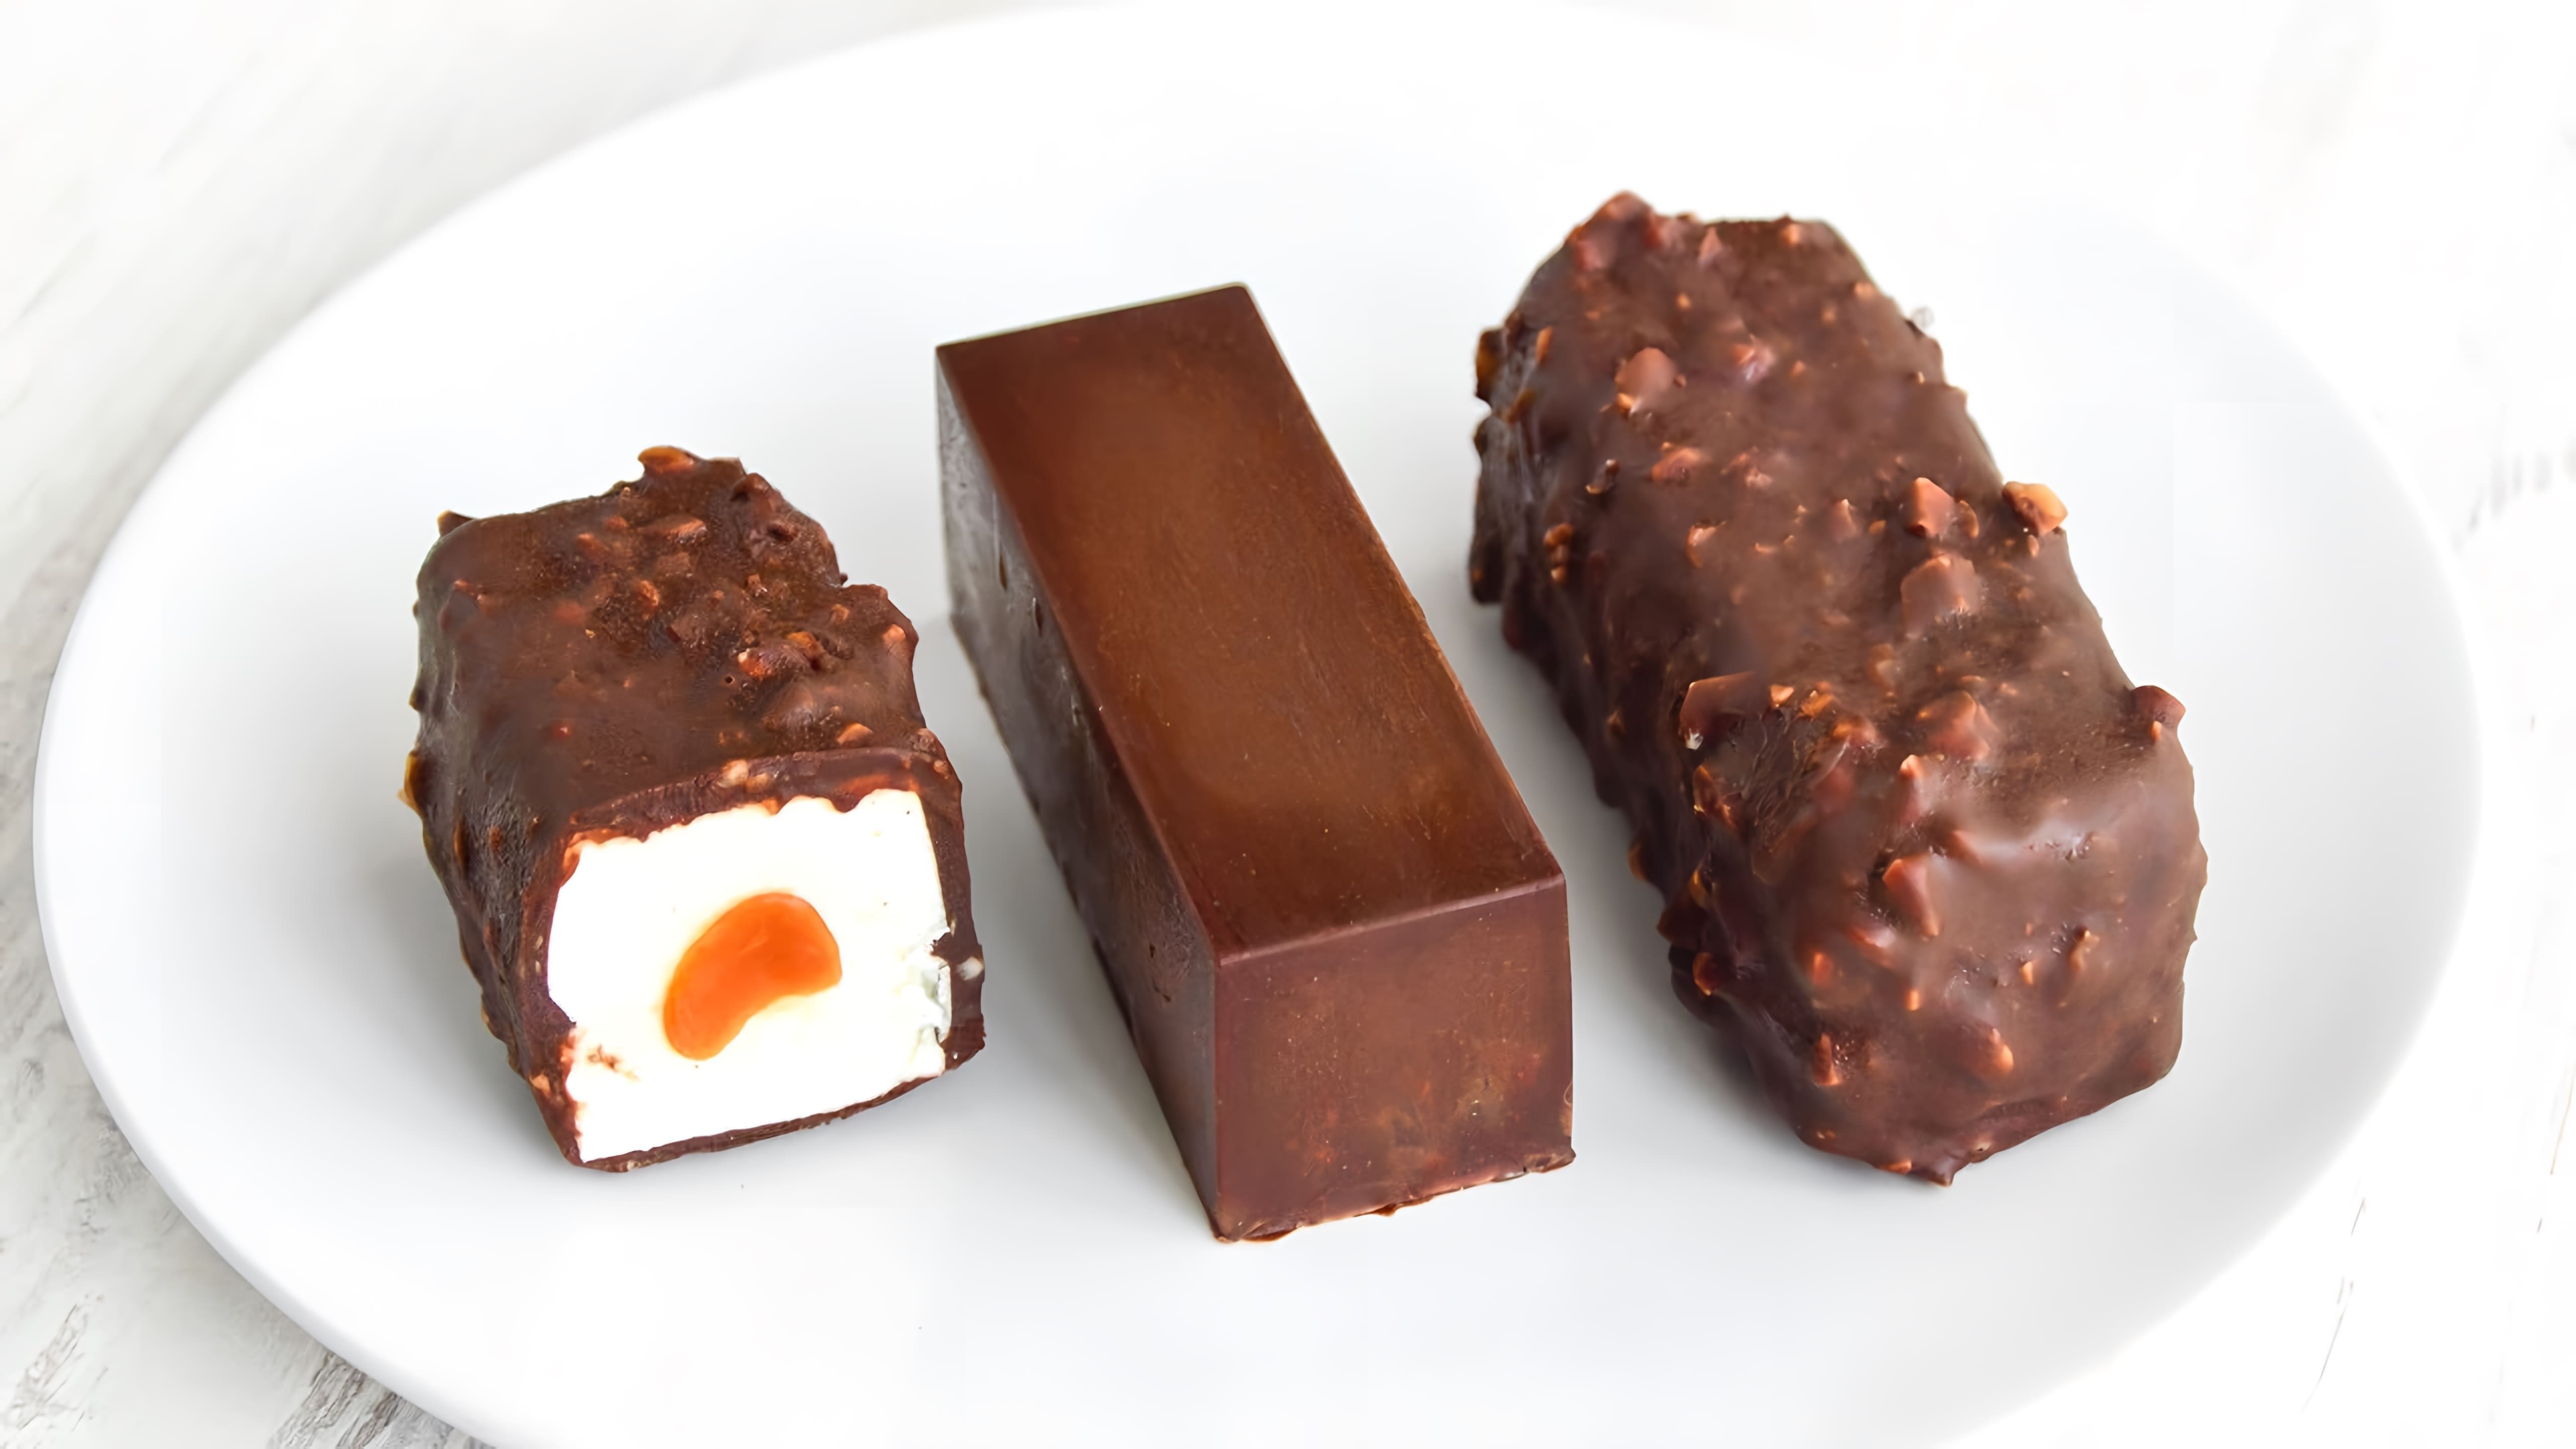 В этом видео демонстрируется рецепт приготовления творожных сырков в шоколадной глазури с начинкой